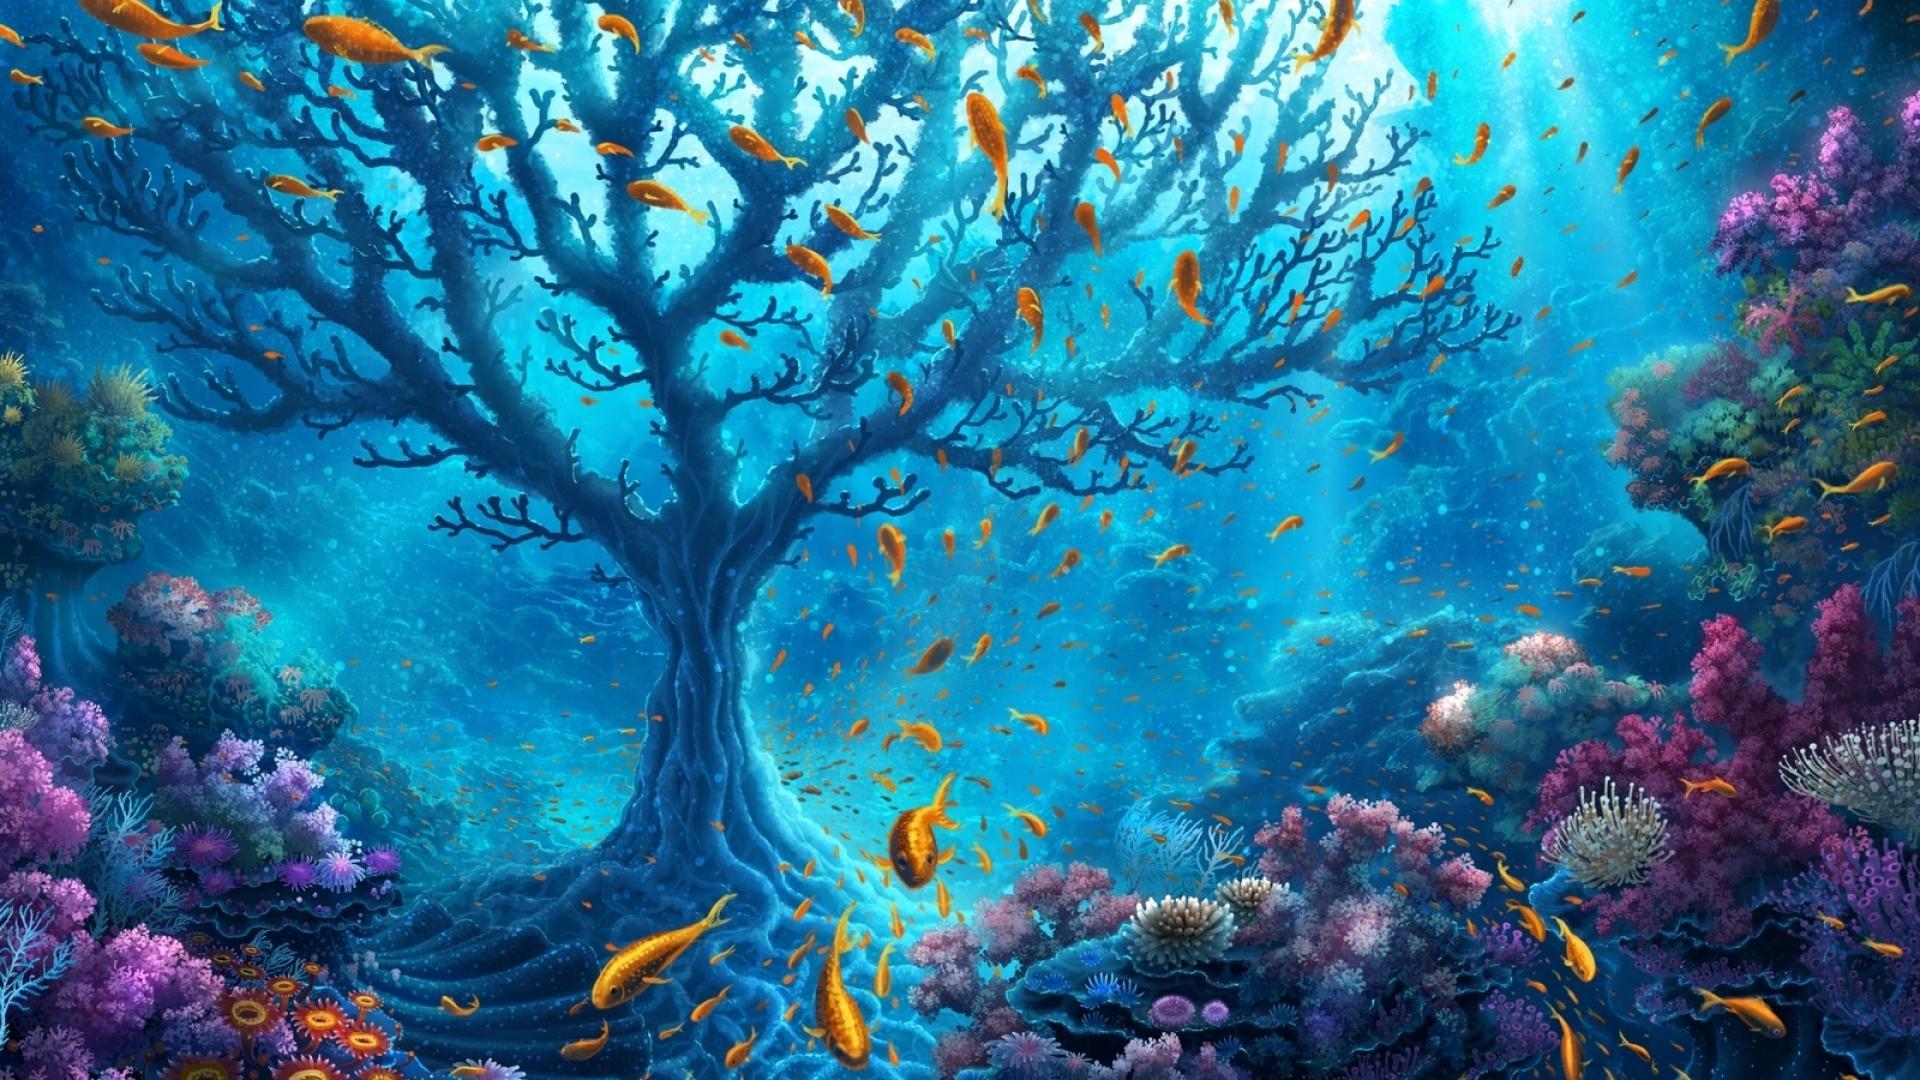 Underwater World Fantasy wallpaper. Underwater World Fantasy stock